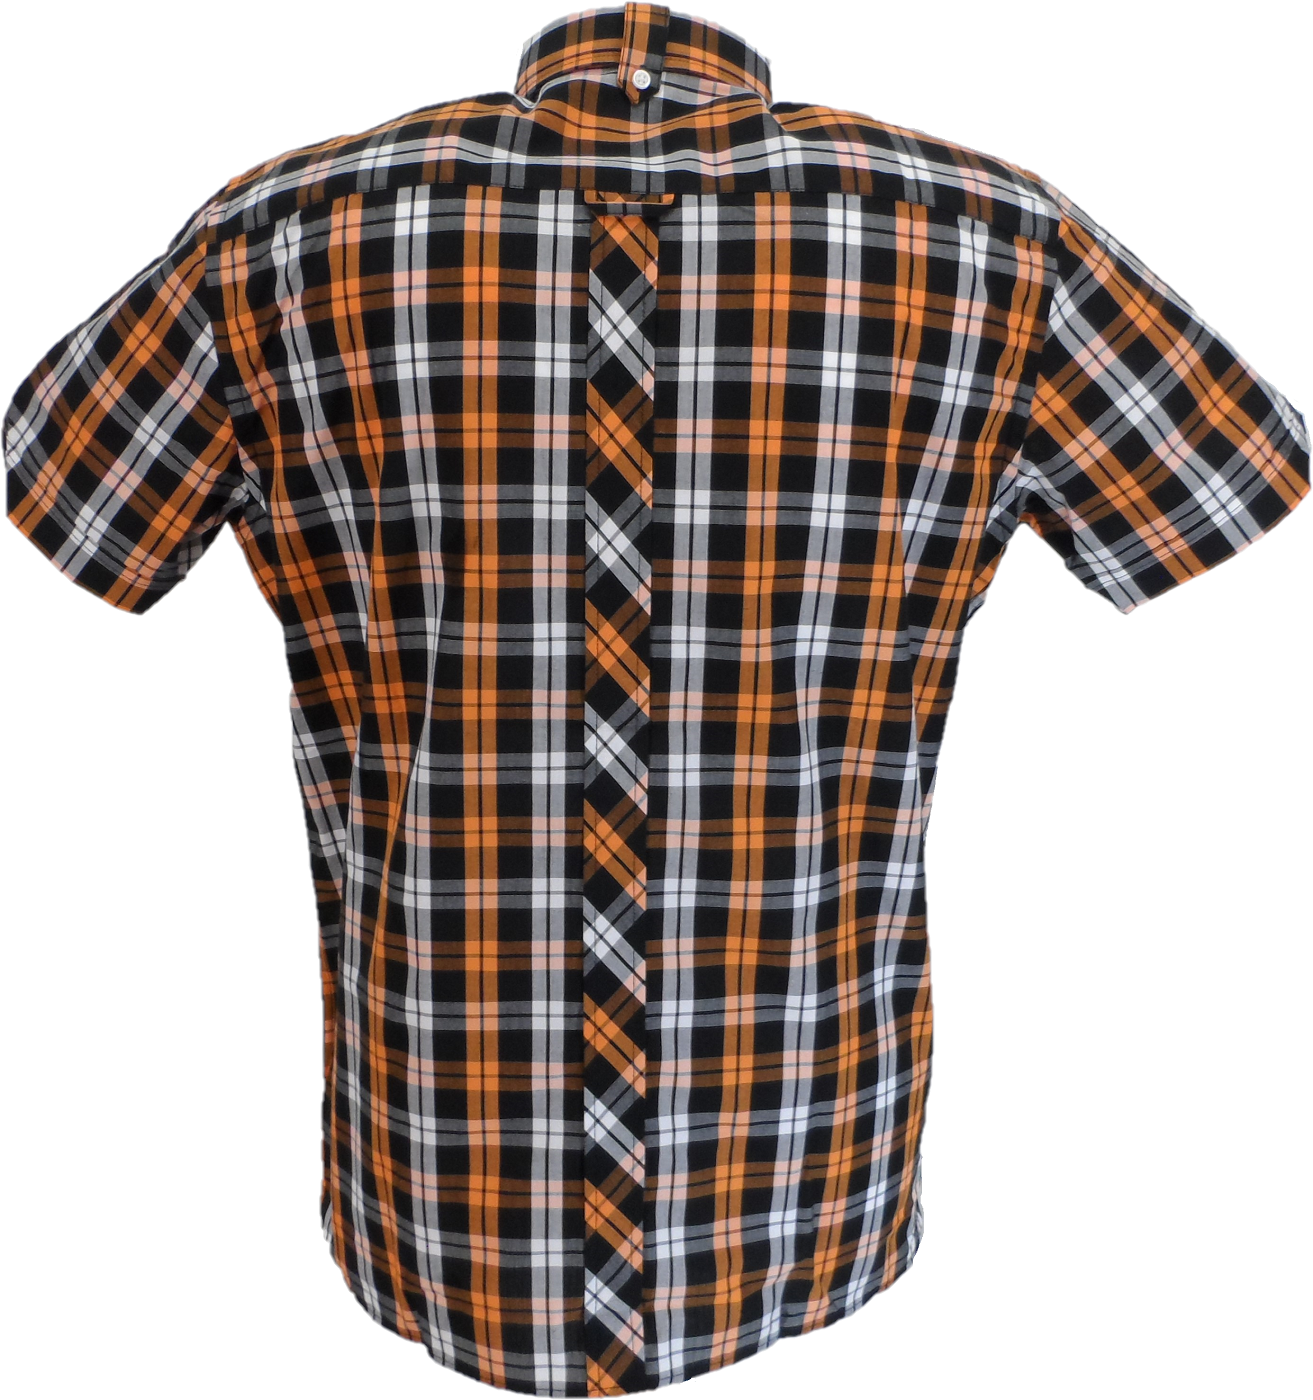 Trojan Camisas de manga corta y pañuelo de bolsillo para hombre, color negro, naranja y blanco